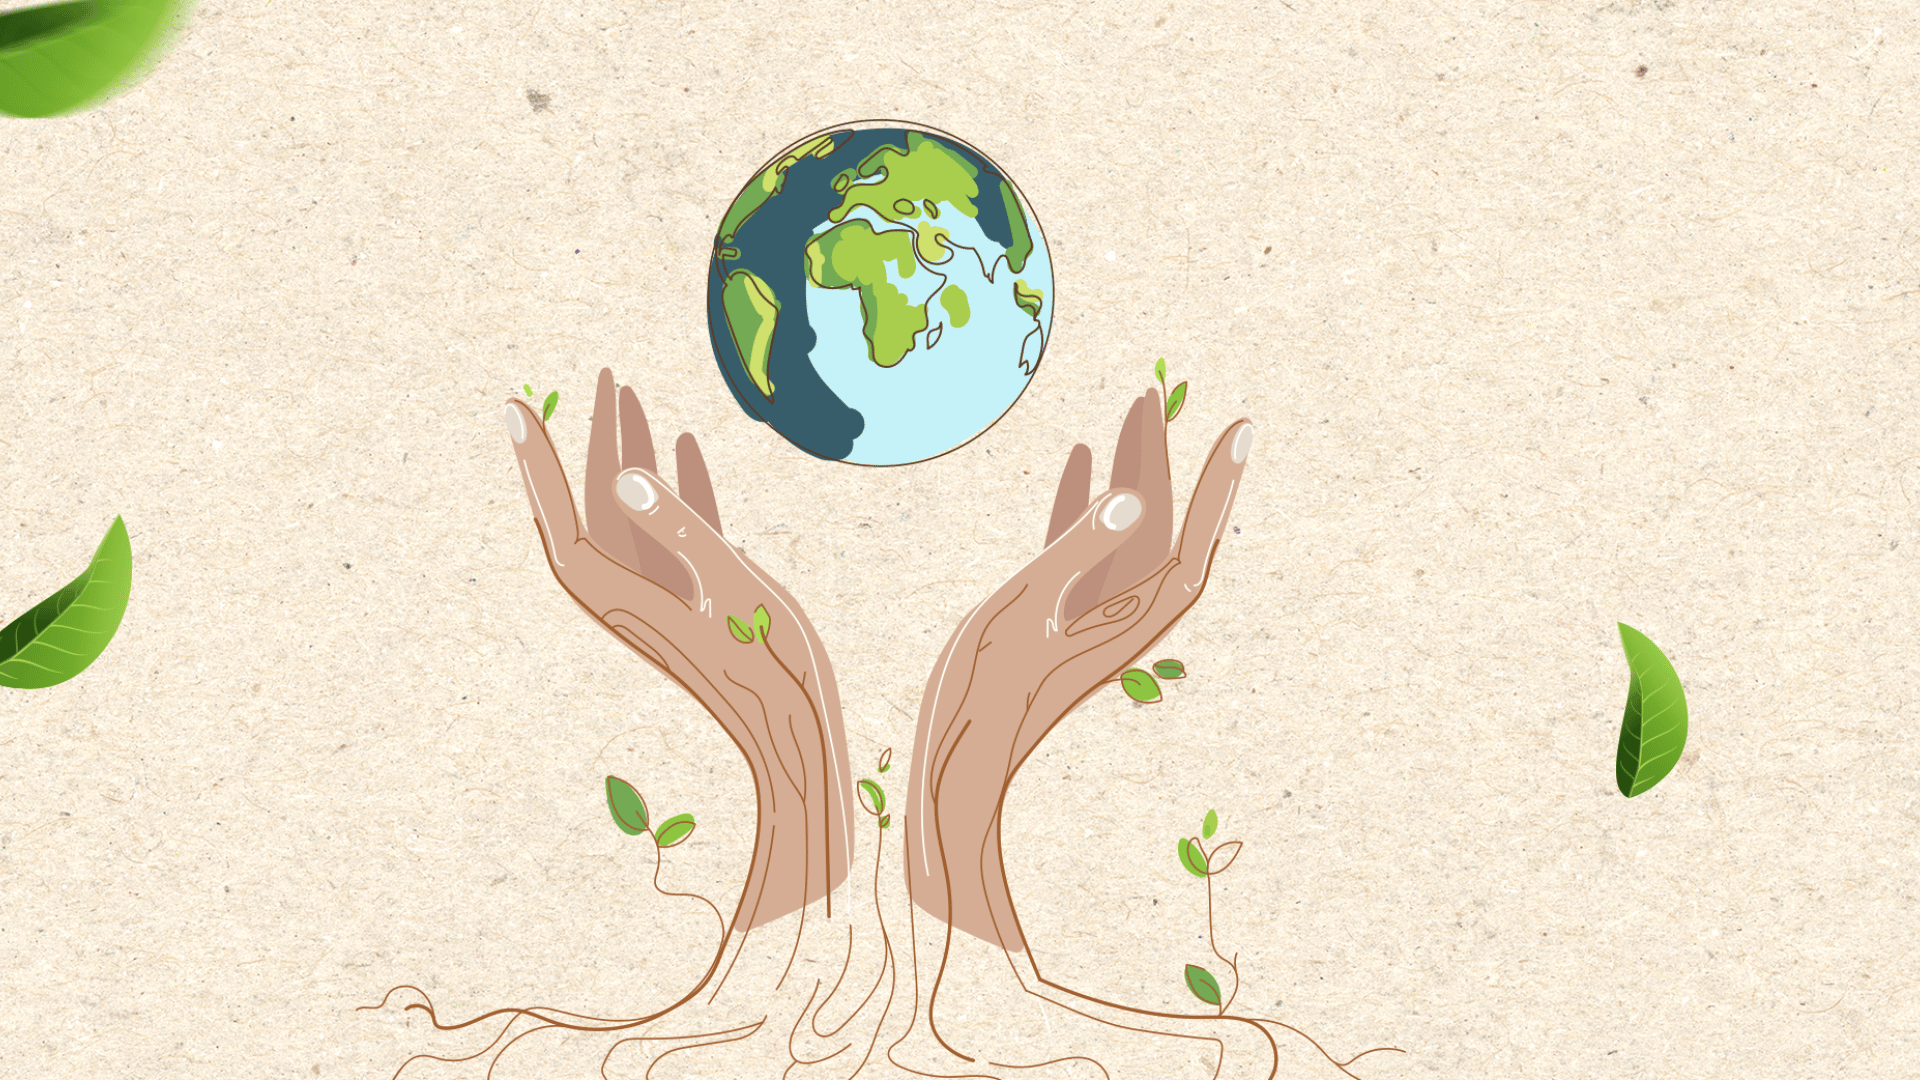 ilustração raízes formando mãos segurando o planeta terra, com folhas e delicadeza, representando harmonia com a natureza